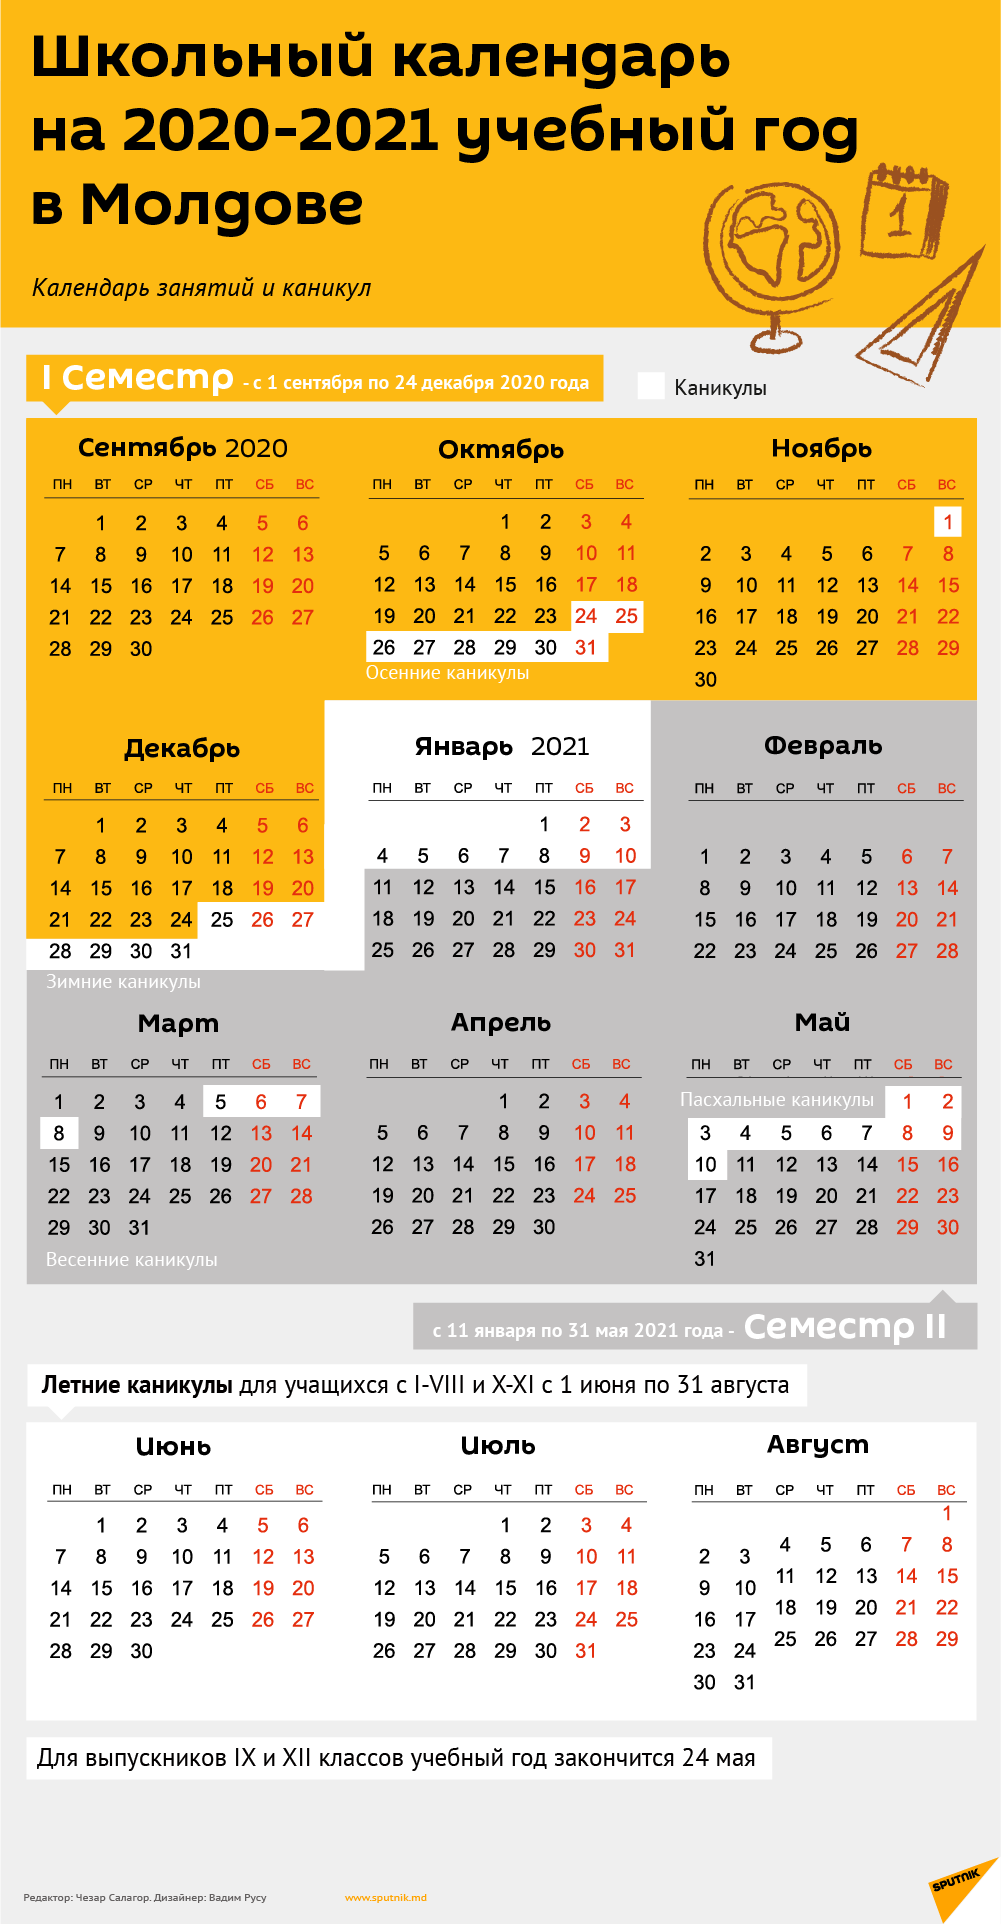 Школьный календарь 2020-2021: полное расписание каникул - 08.06.2020,  Sputnik Молдова